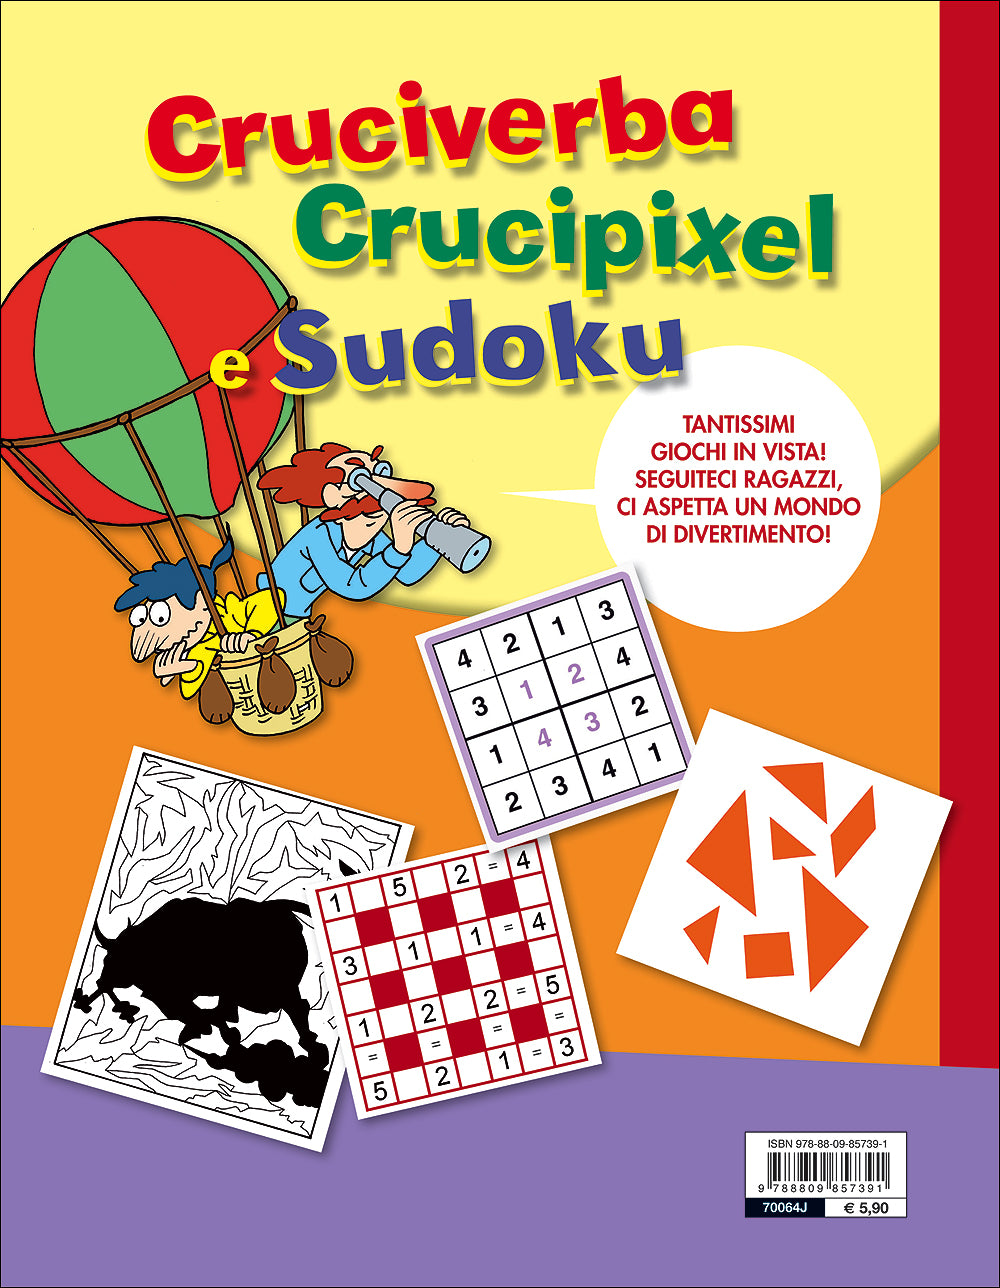 Cruciverba Crucipixel e Sudoku